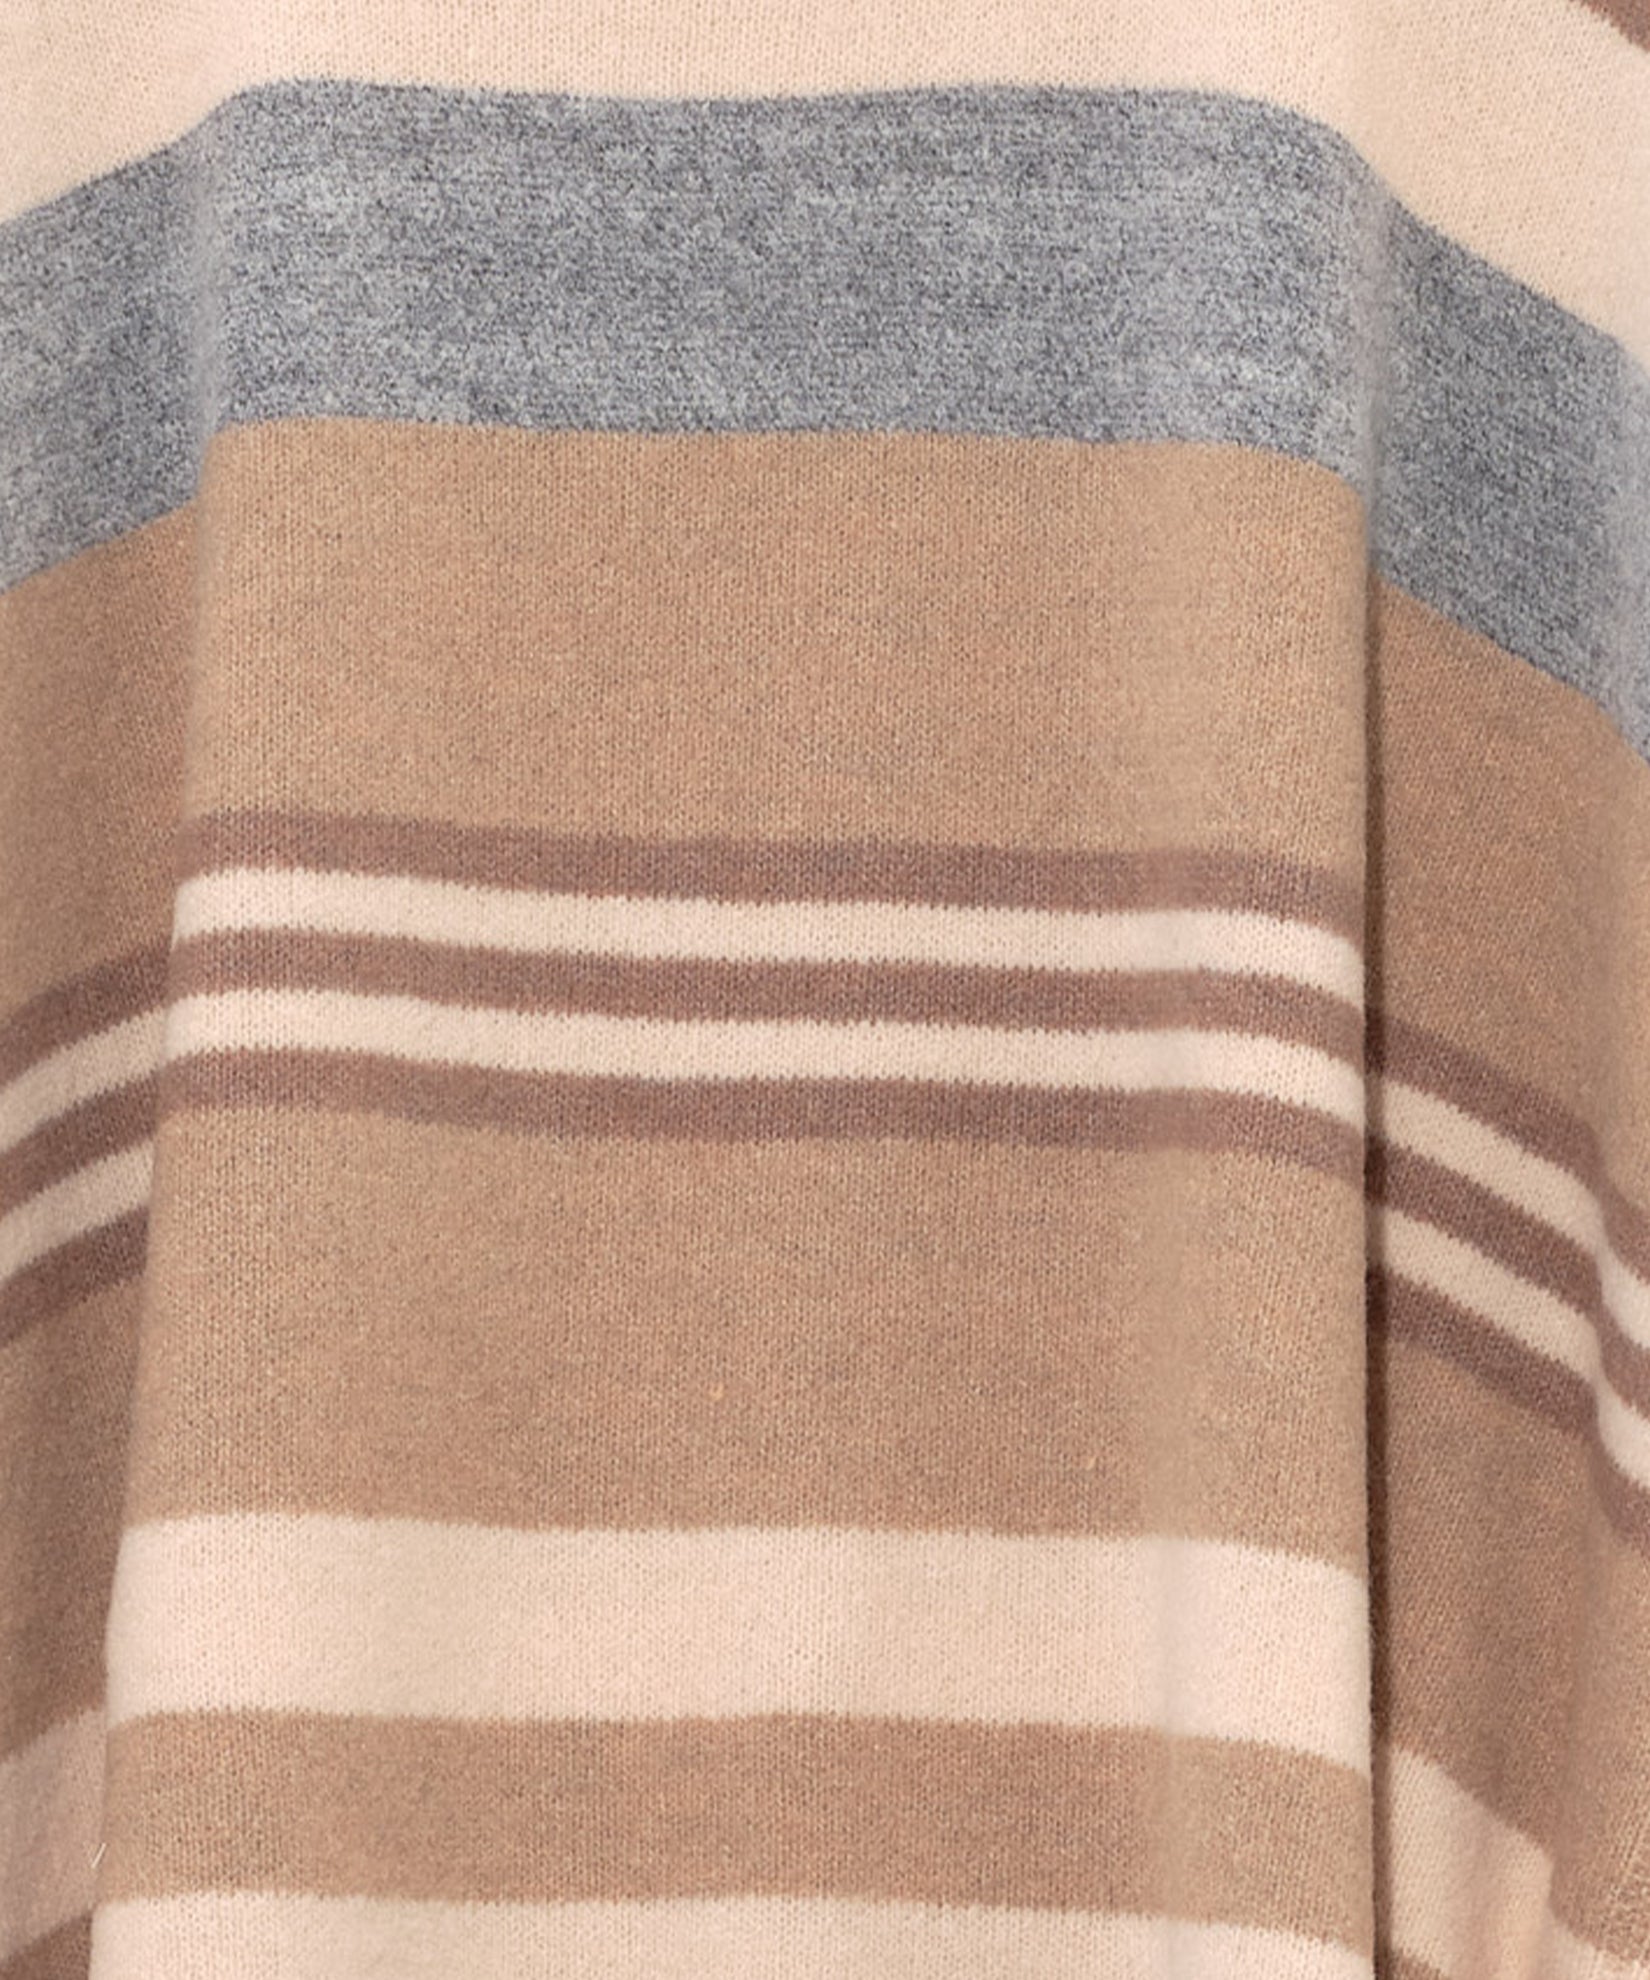 Striped Knit Poncho in color Cream